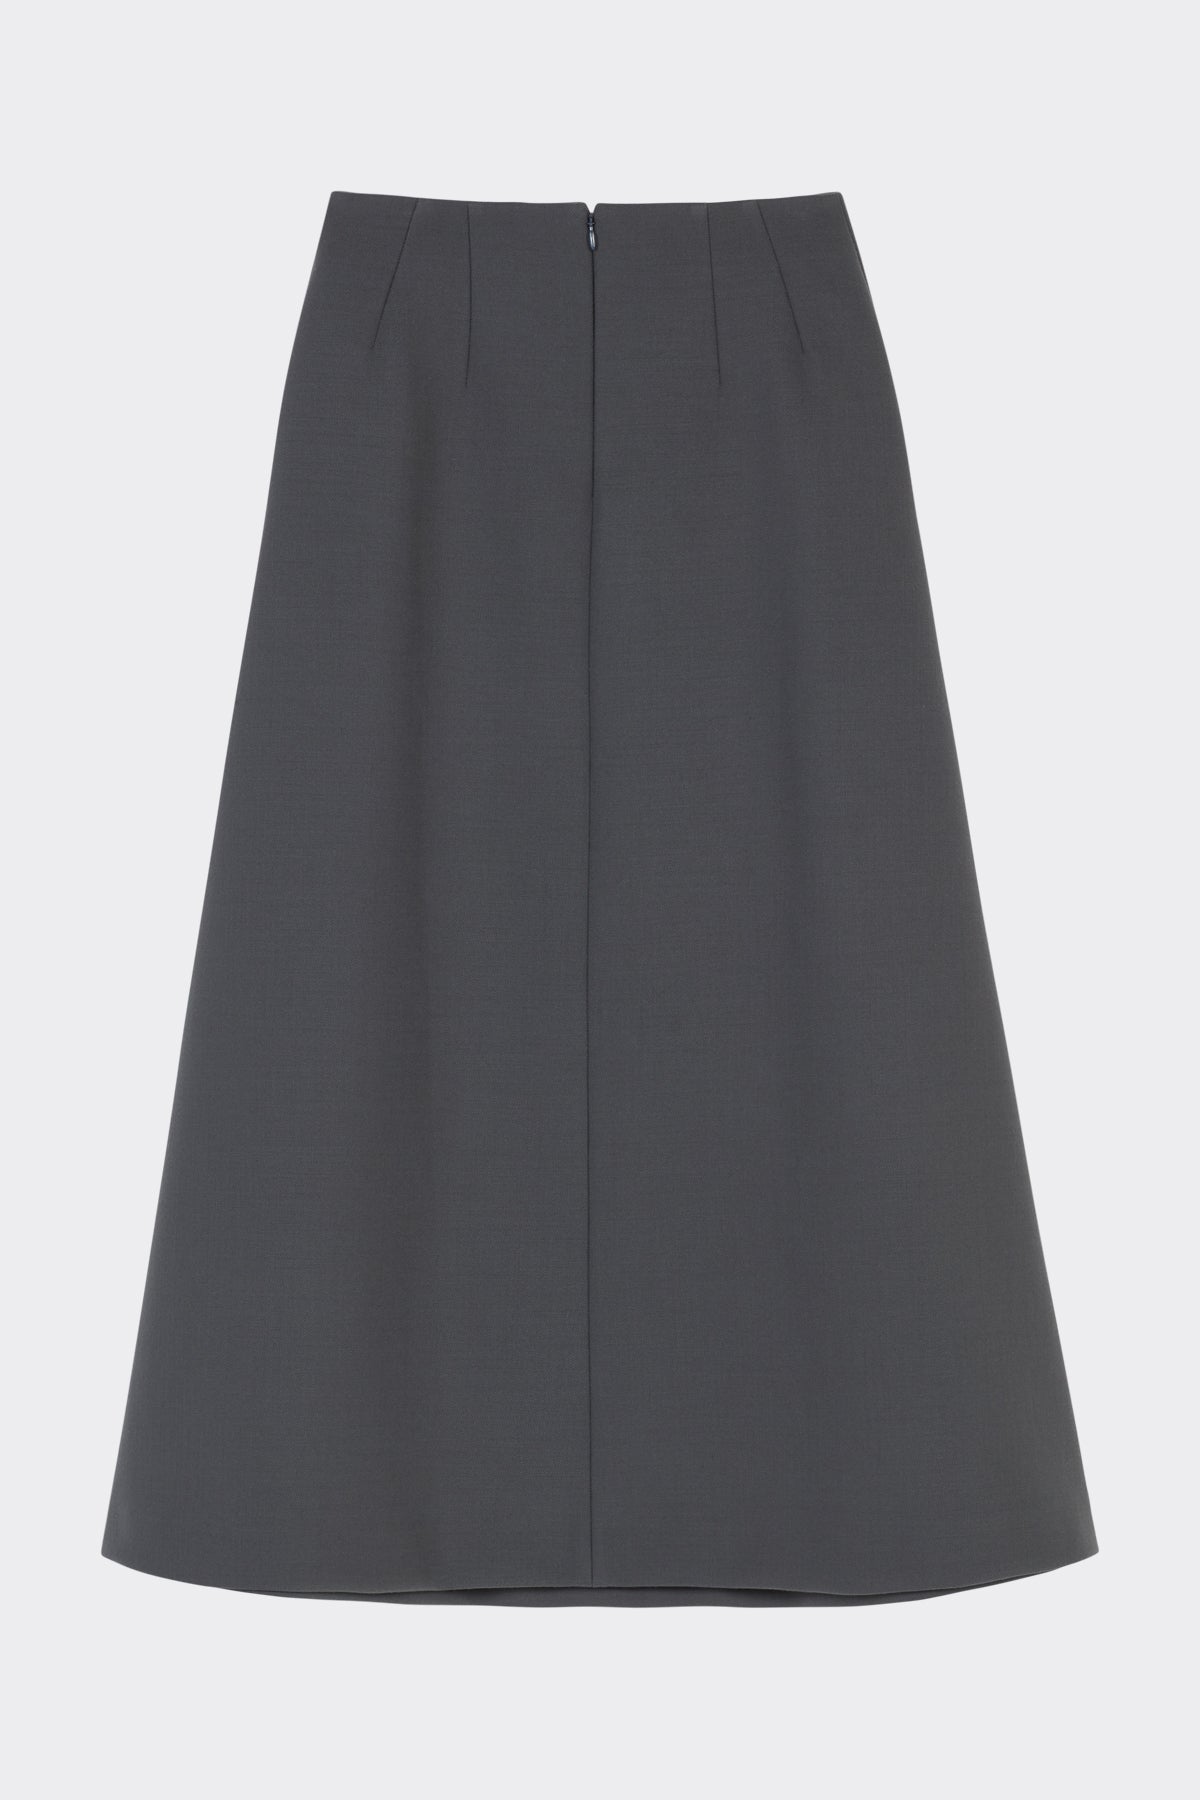 Hugette Skirt in Charcoal Grey | Noon By Noor